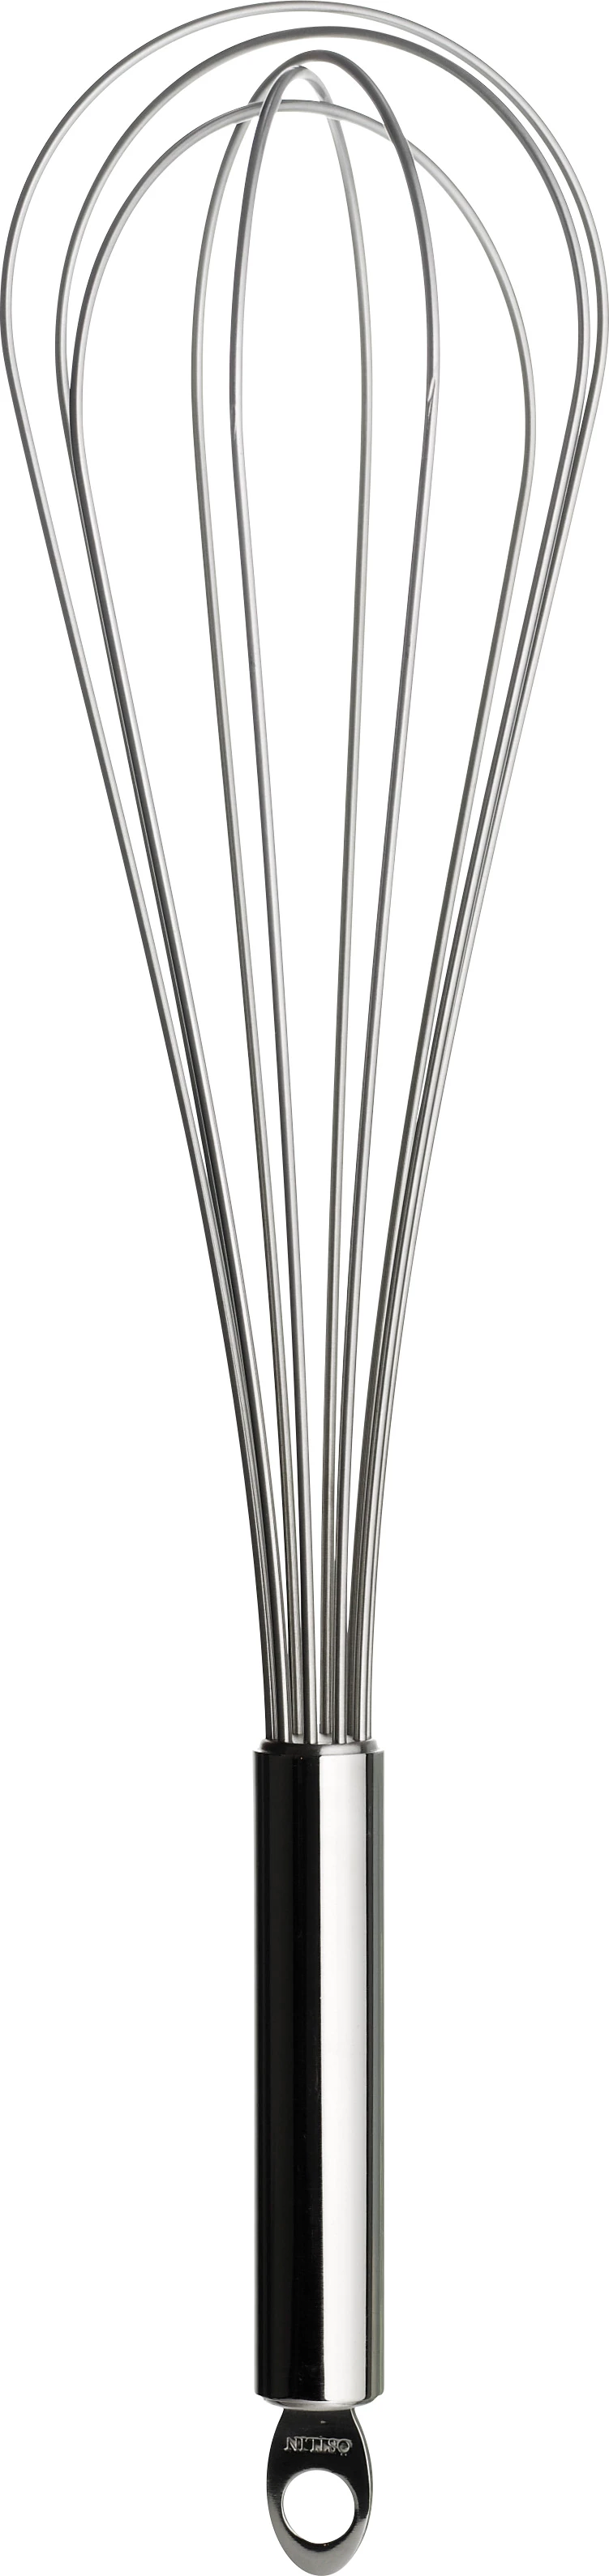 Piskeris med ophæng, rustfrit stål, 40 cm